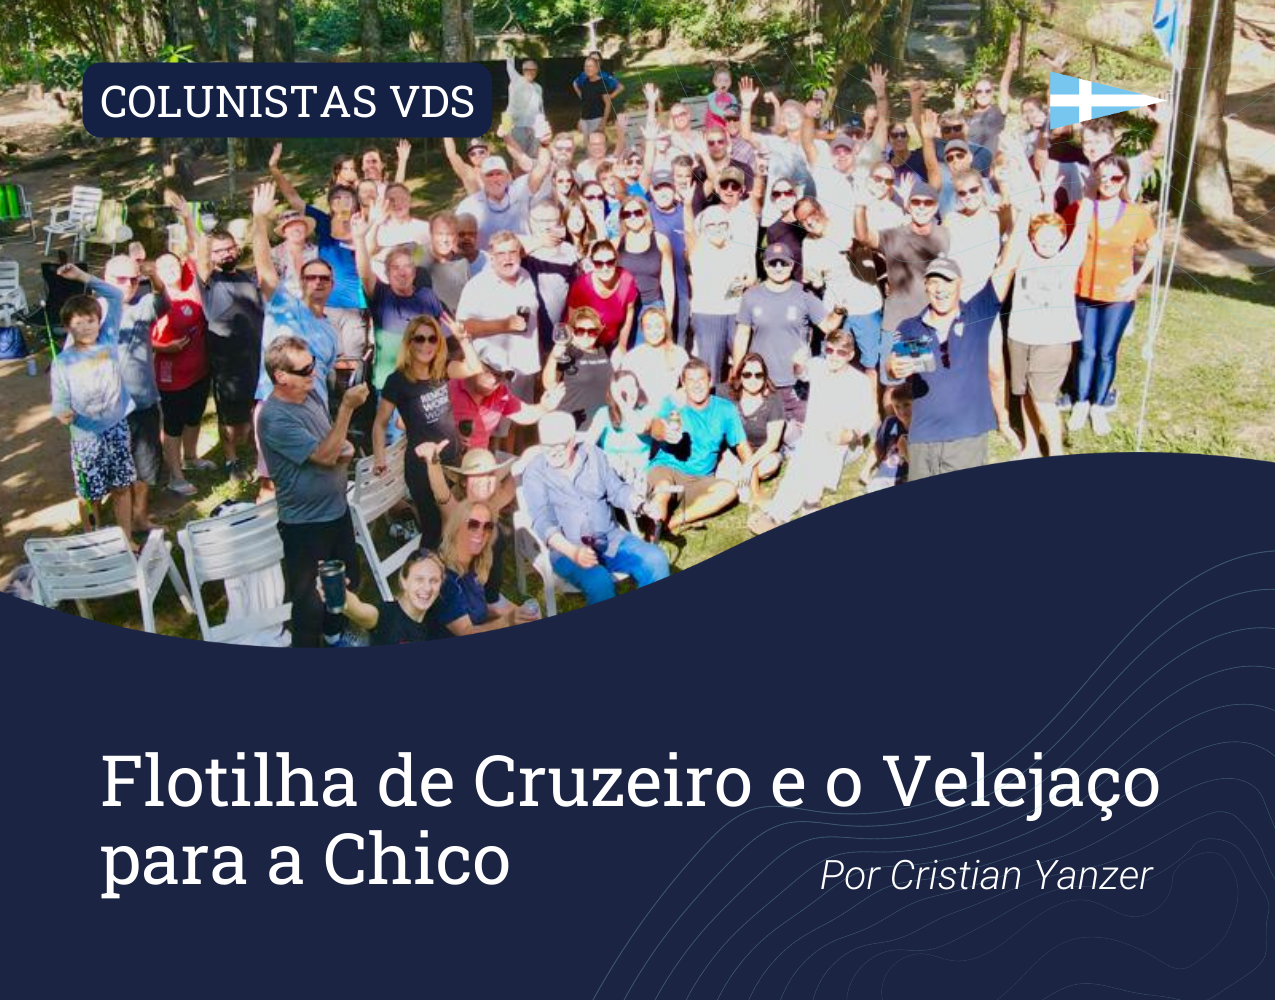 Colunistas VDS: Flotilha de Cruzeiro e o Velejaço para a Chico